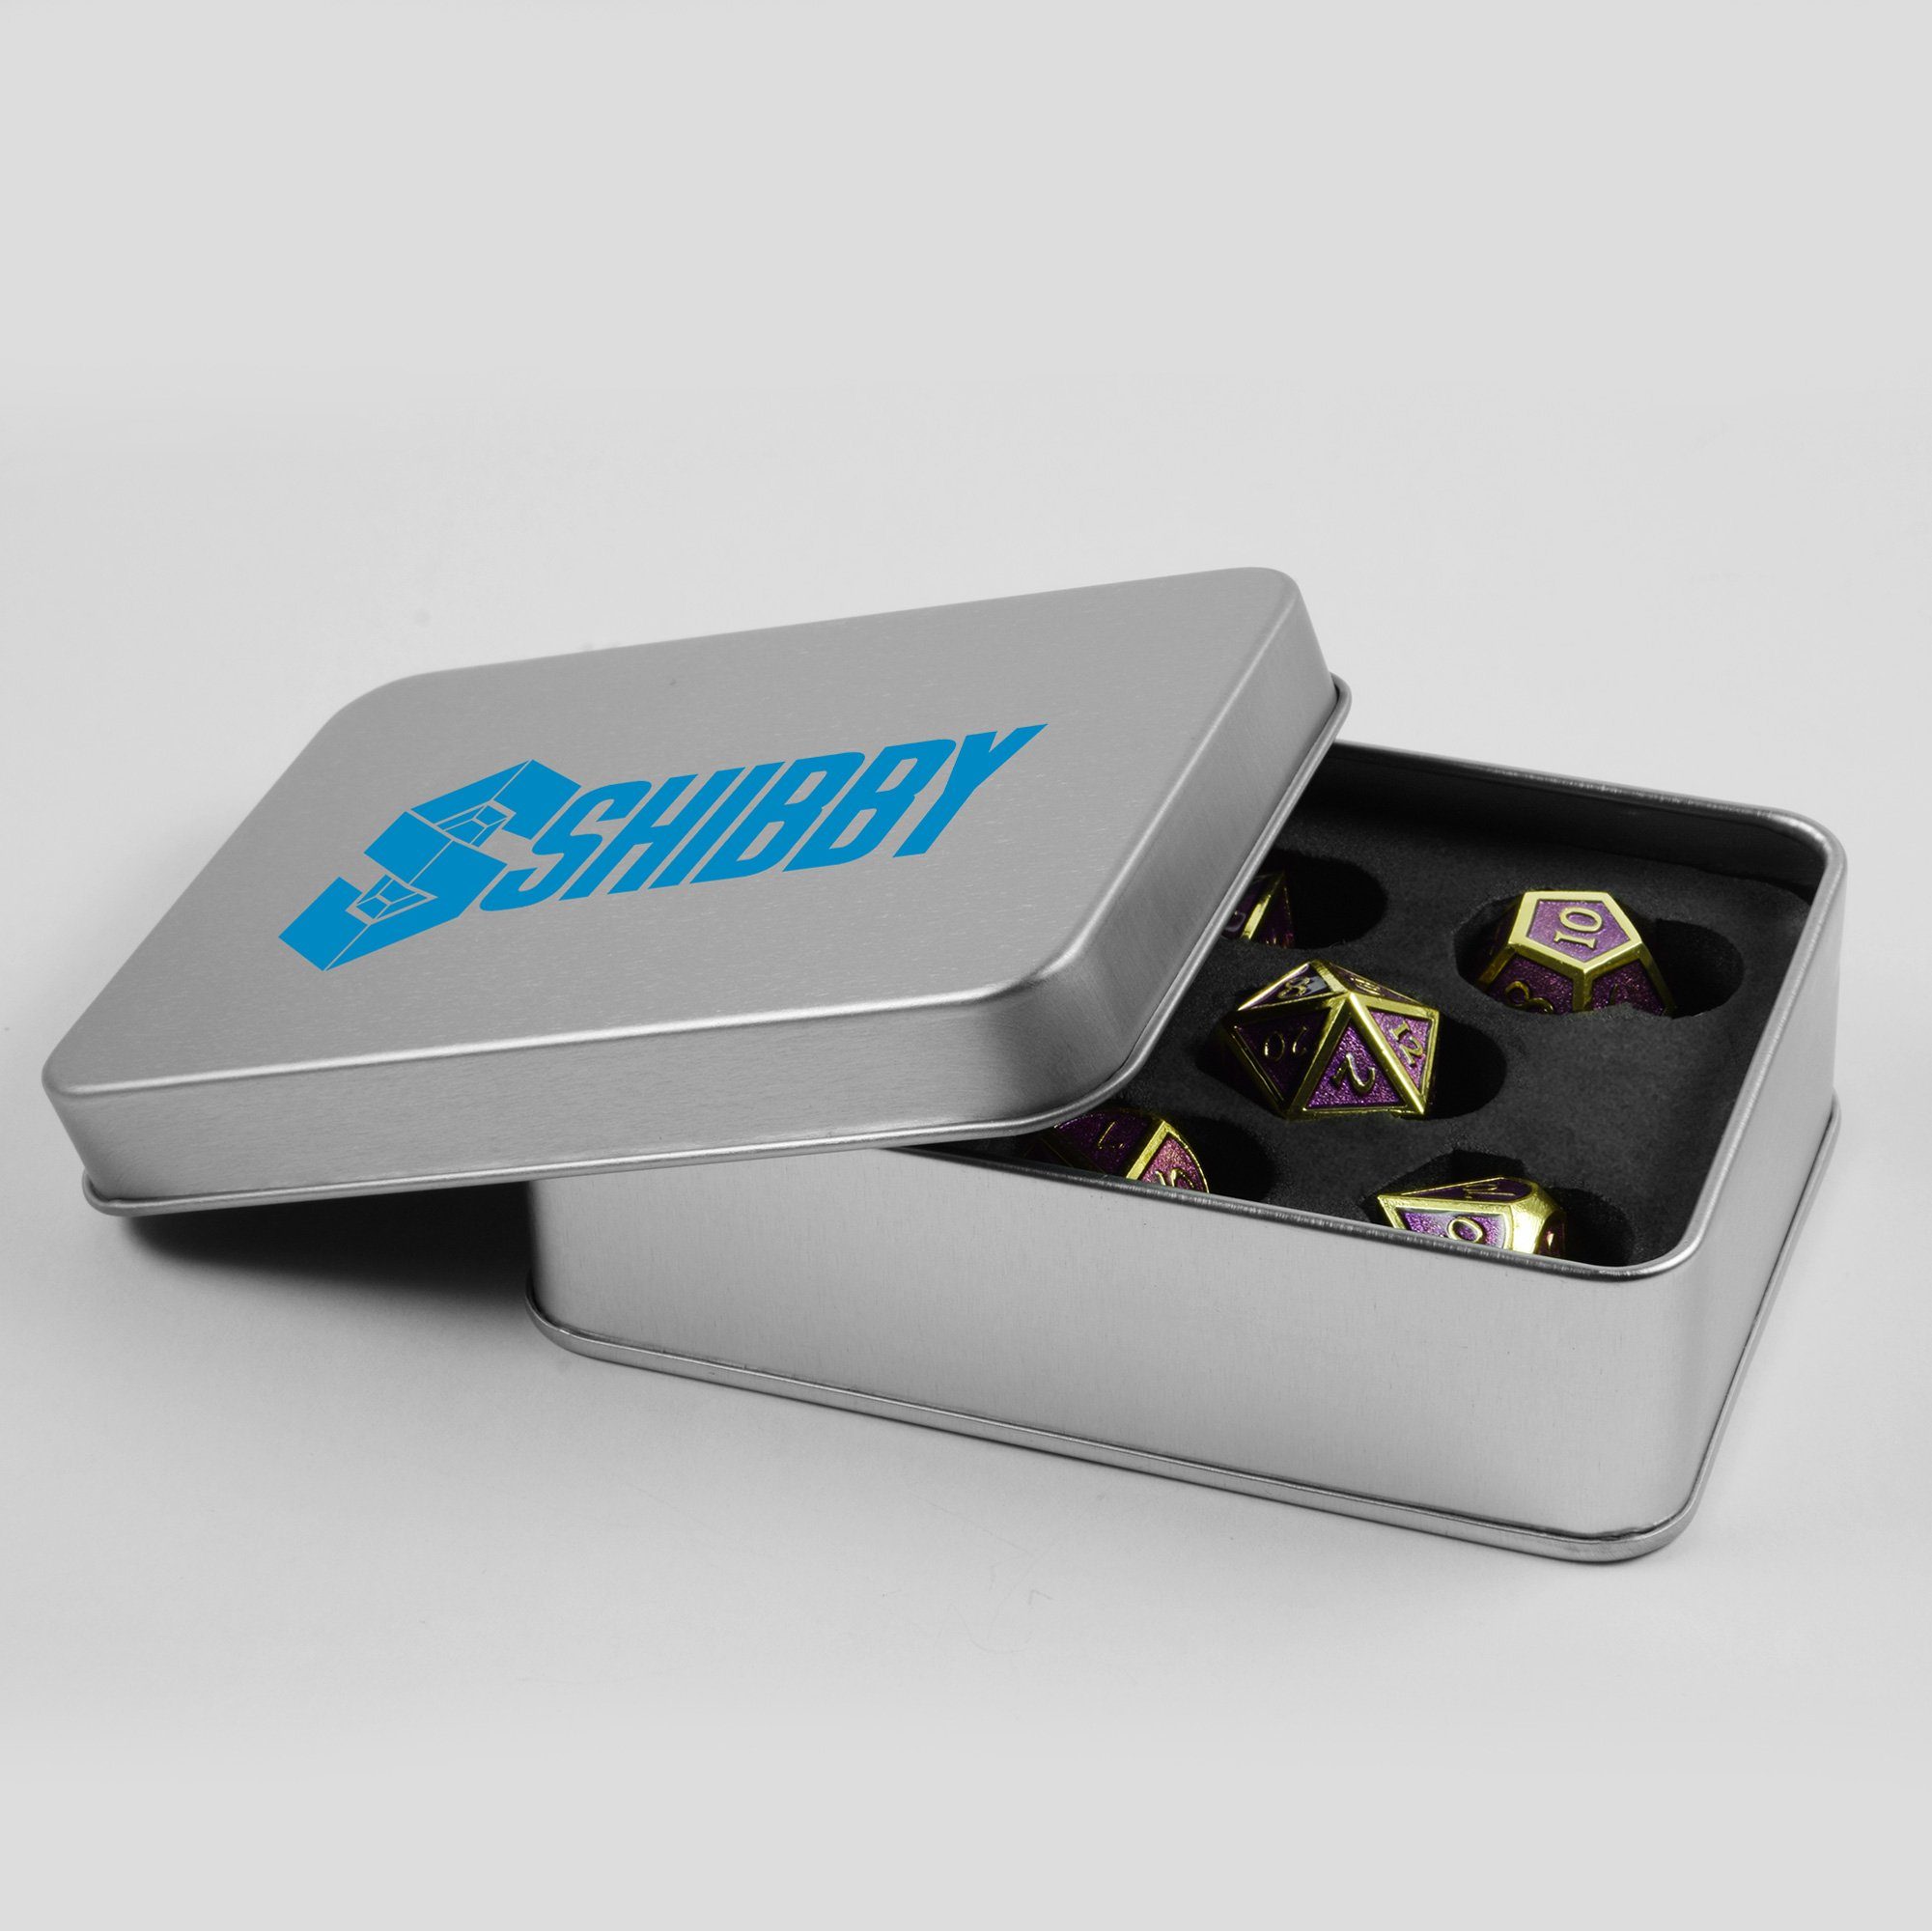 SHIBBY Spielesammlung, 7 polyedrische Metall-DND-Würfel Steampunk Aufbewahrungsbox in inkl. Optik, Gold/Lila